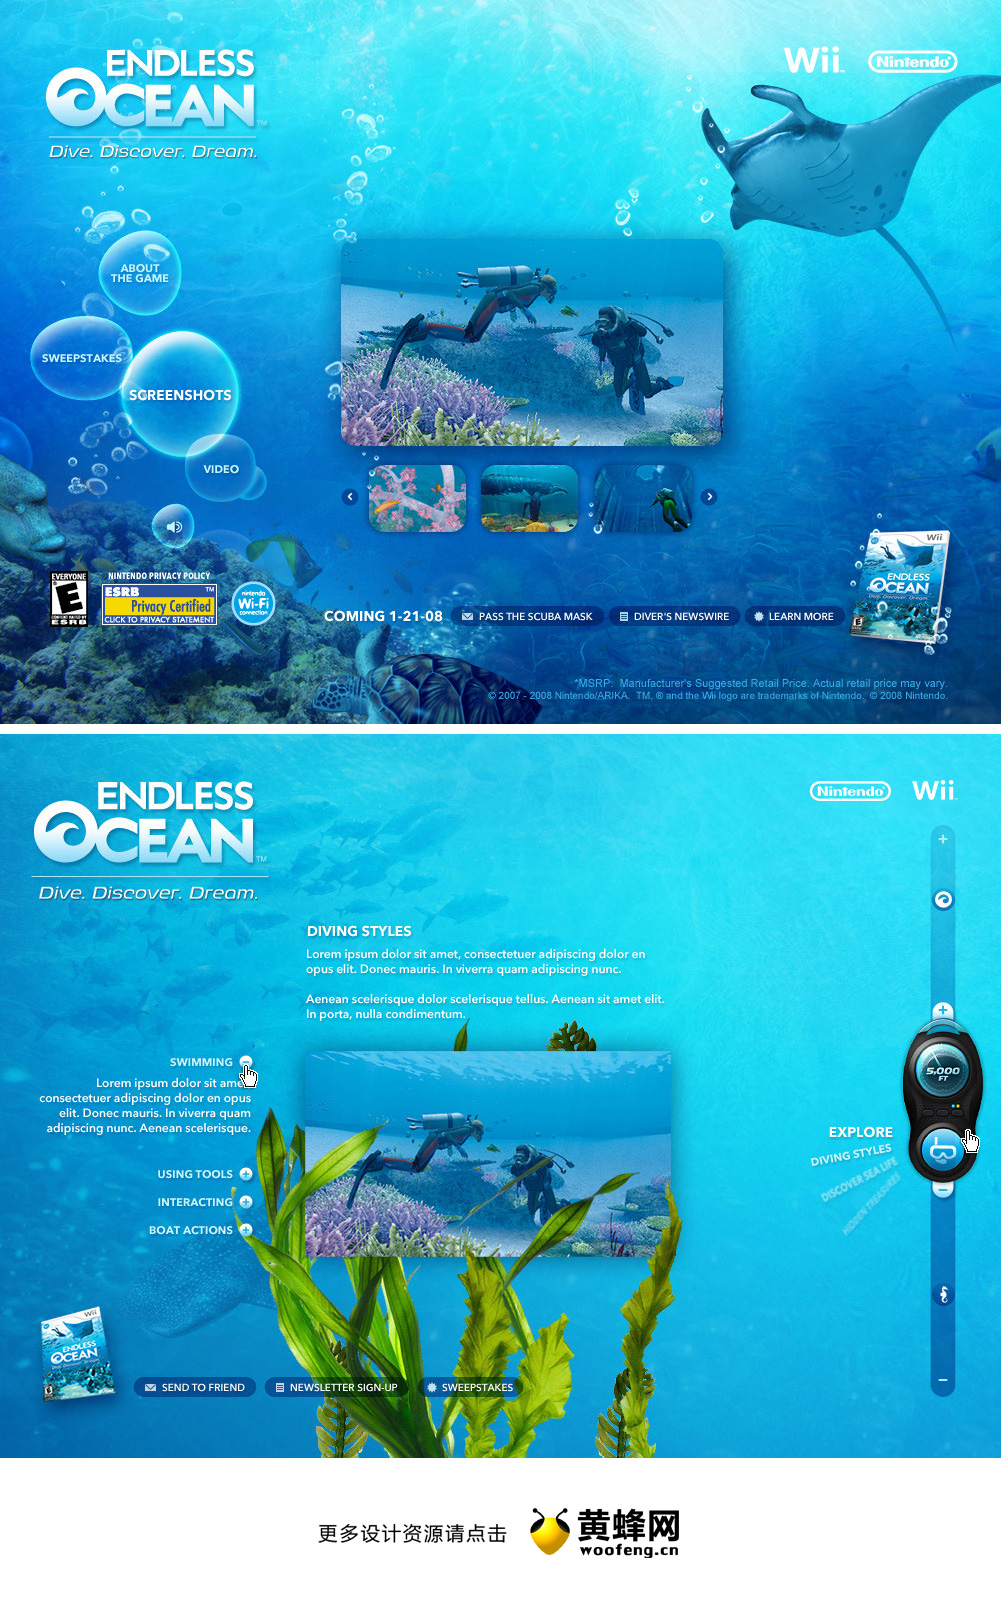 无尽的海洋蓝色网站设计欣赏，来源自黄蜂网https://woofeng.cn/